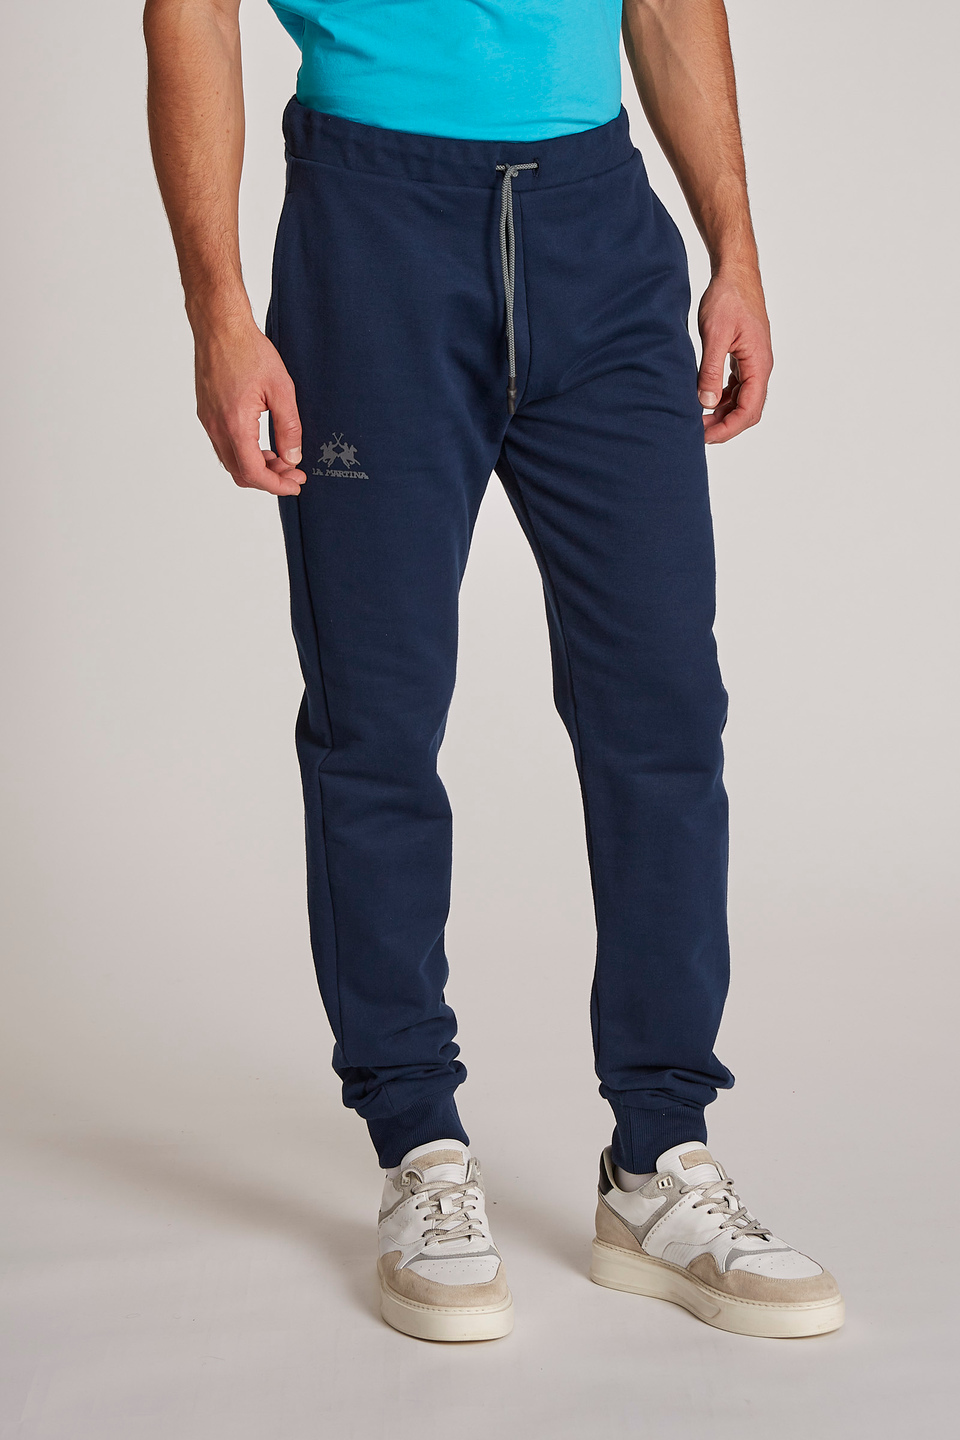 Men's regular-fit cotton trousers | La Martina - Official Online Shop